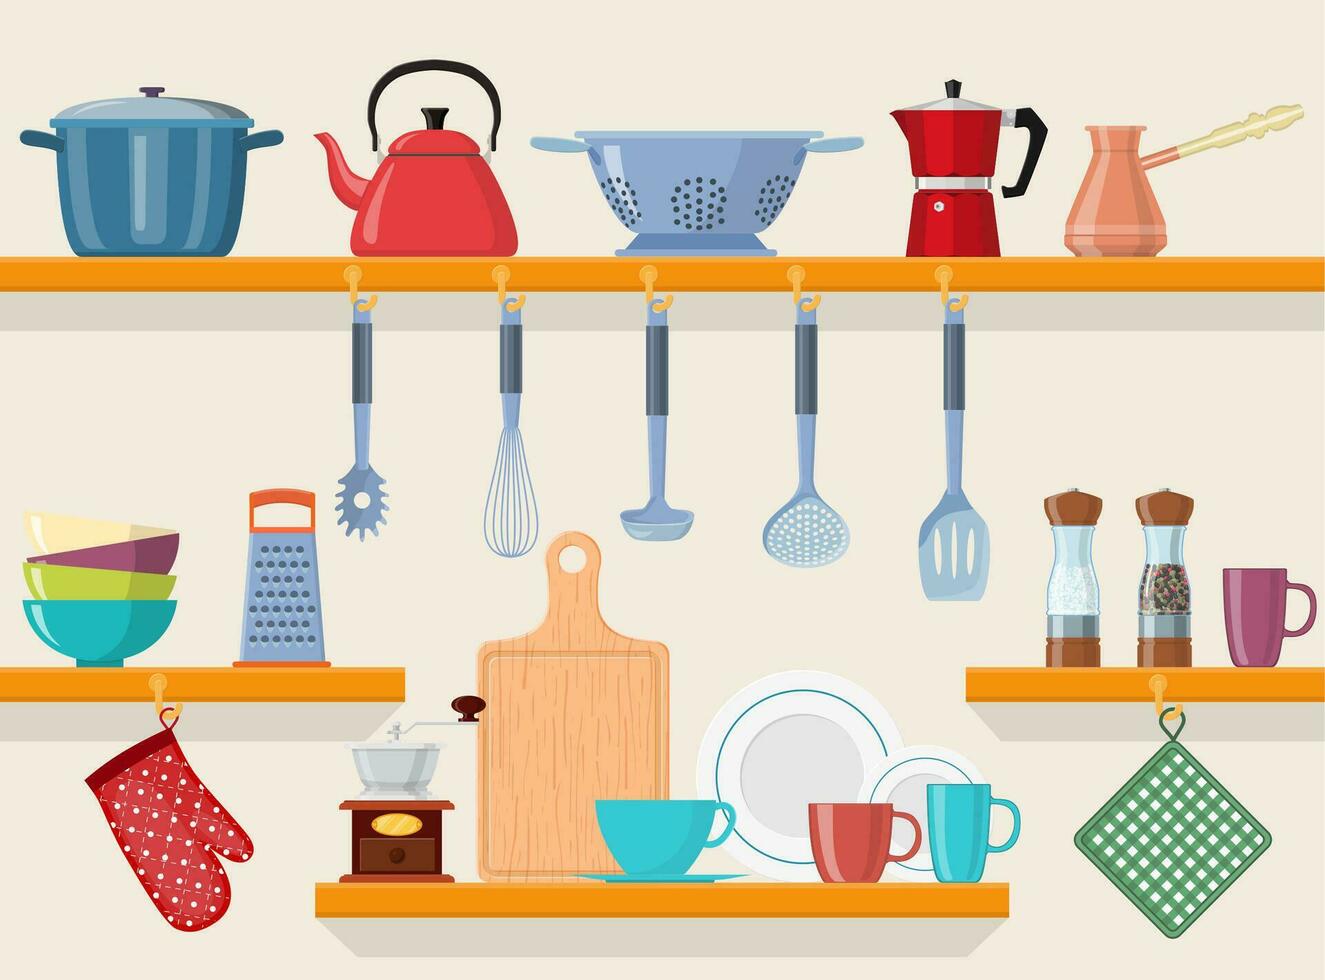 keuken schappen met servies. keuken schappen met Koken gereedschap en hangende potten. huis interieur. naadloos patroon vector illustratie in vlak stijl.